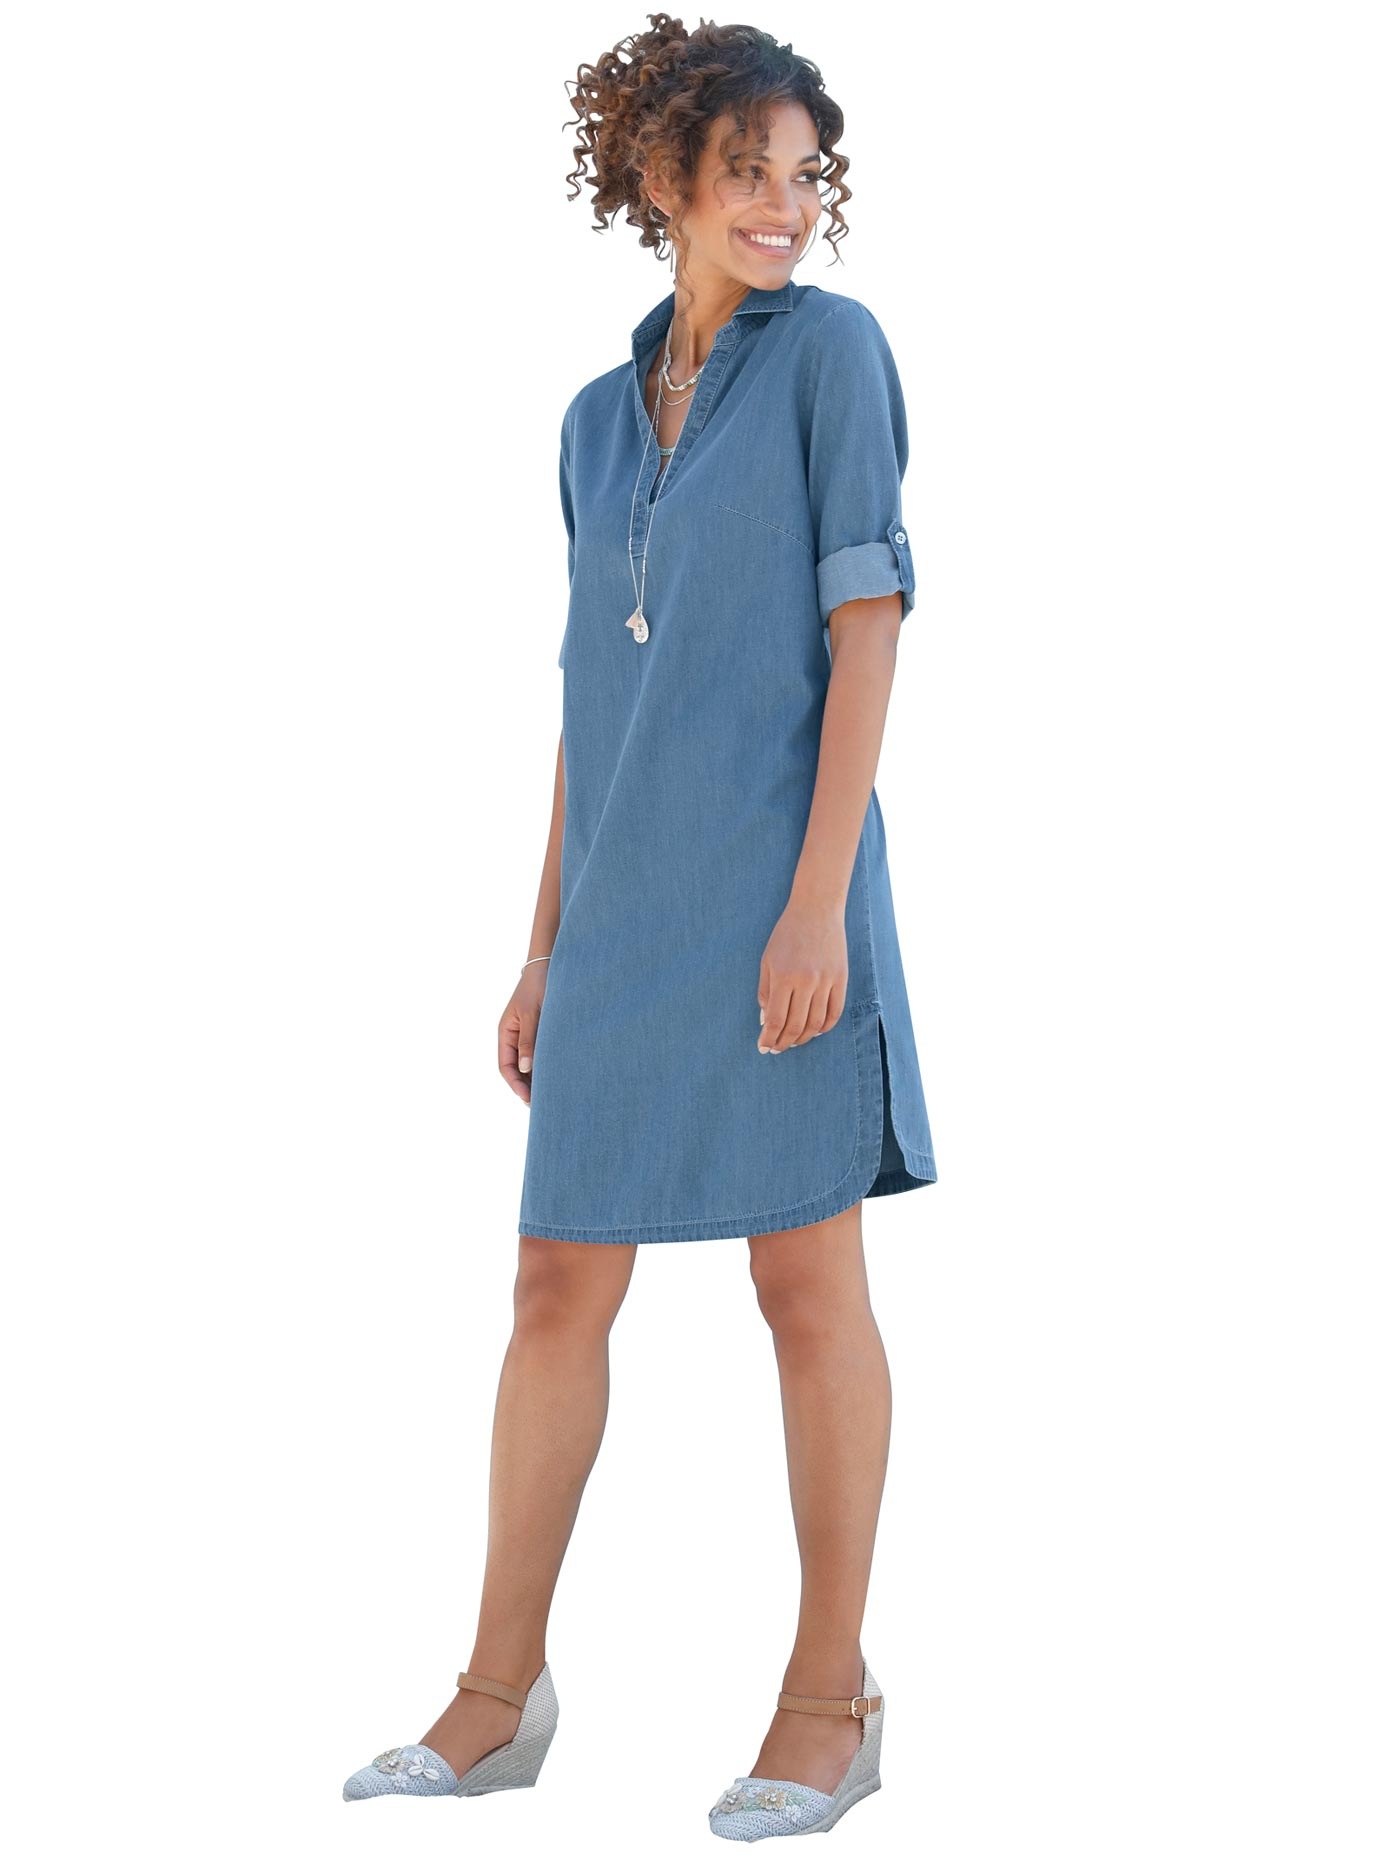 Klitm\u00f8ller Jeanskleid blau Casual-Look Mode Kleider Jeanskleider Klitmøller 